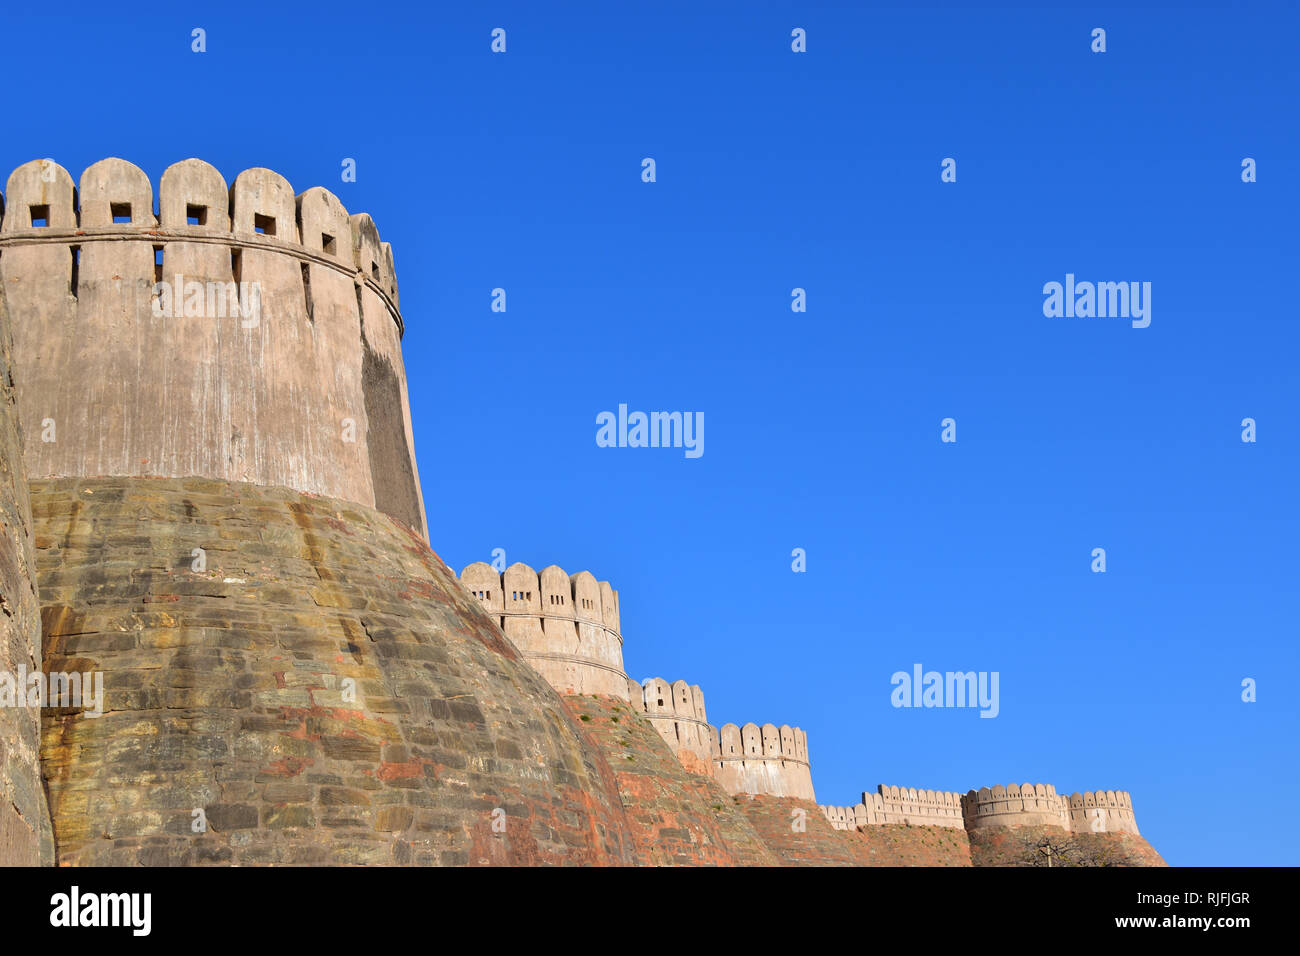 Kumbhalgarh Fort, Kumbhalgarh, Rajasthan, India Stock Photo